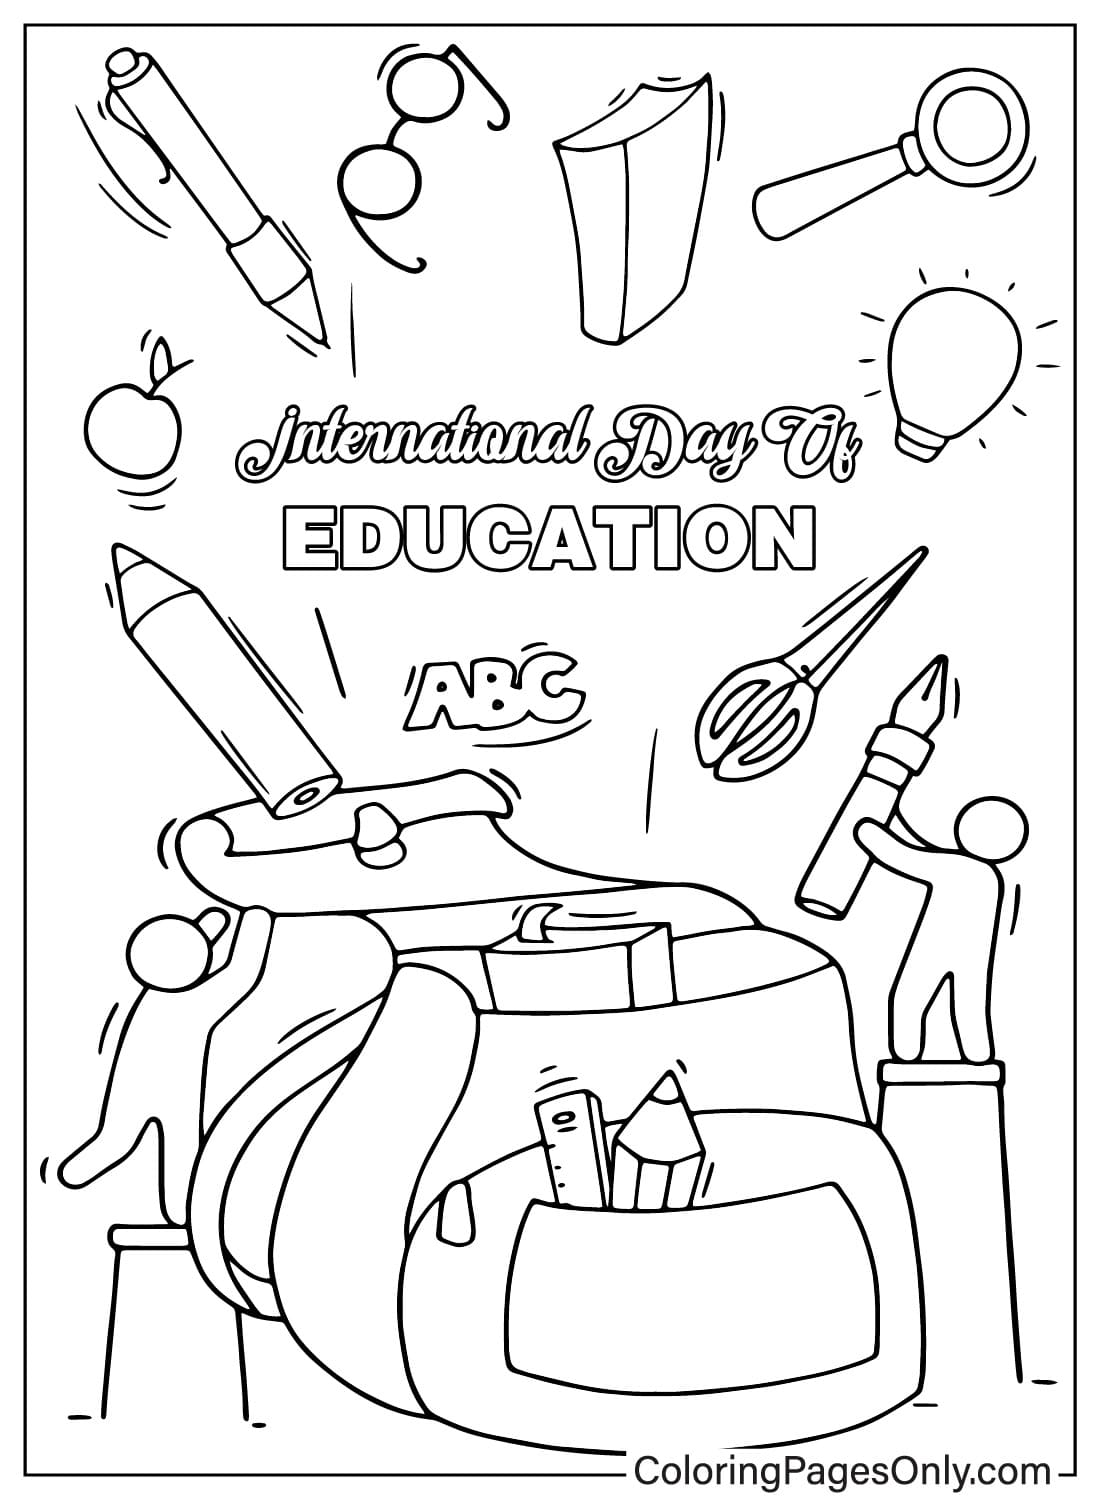 Página para colorear del Día Internacional de la Educación JPG del Día Internacional de la Educación